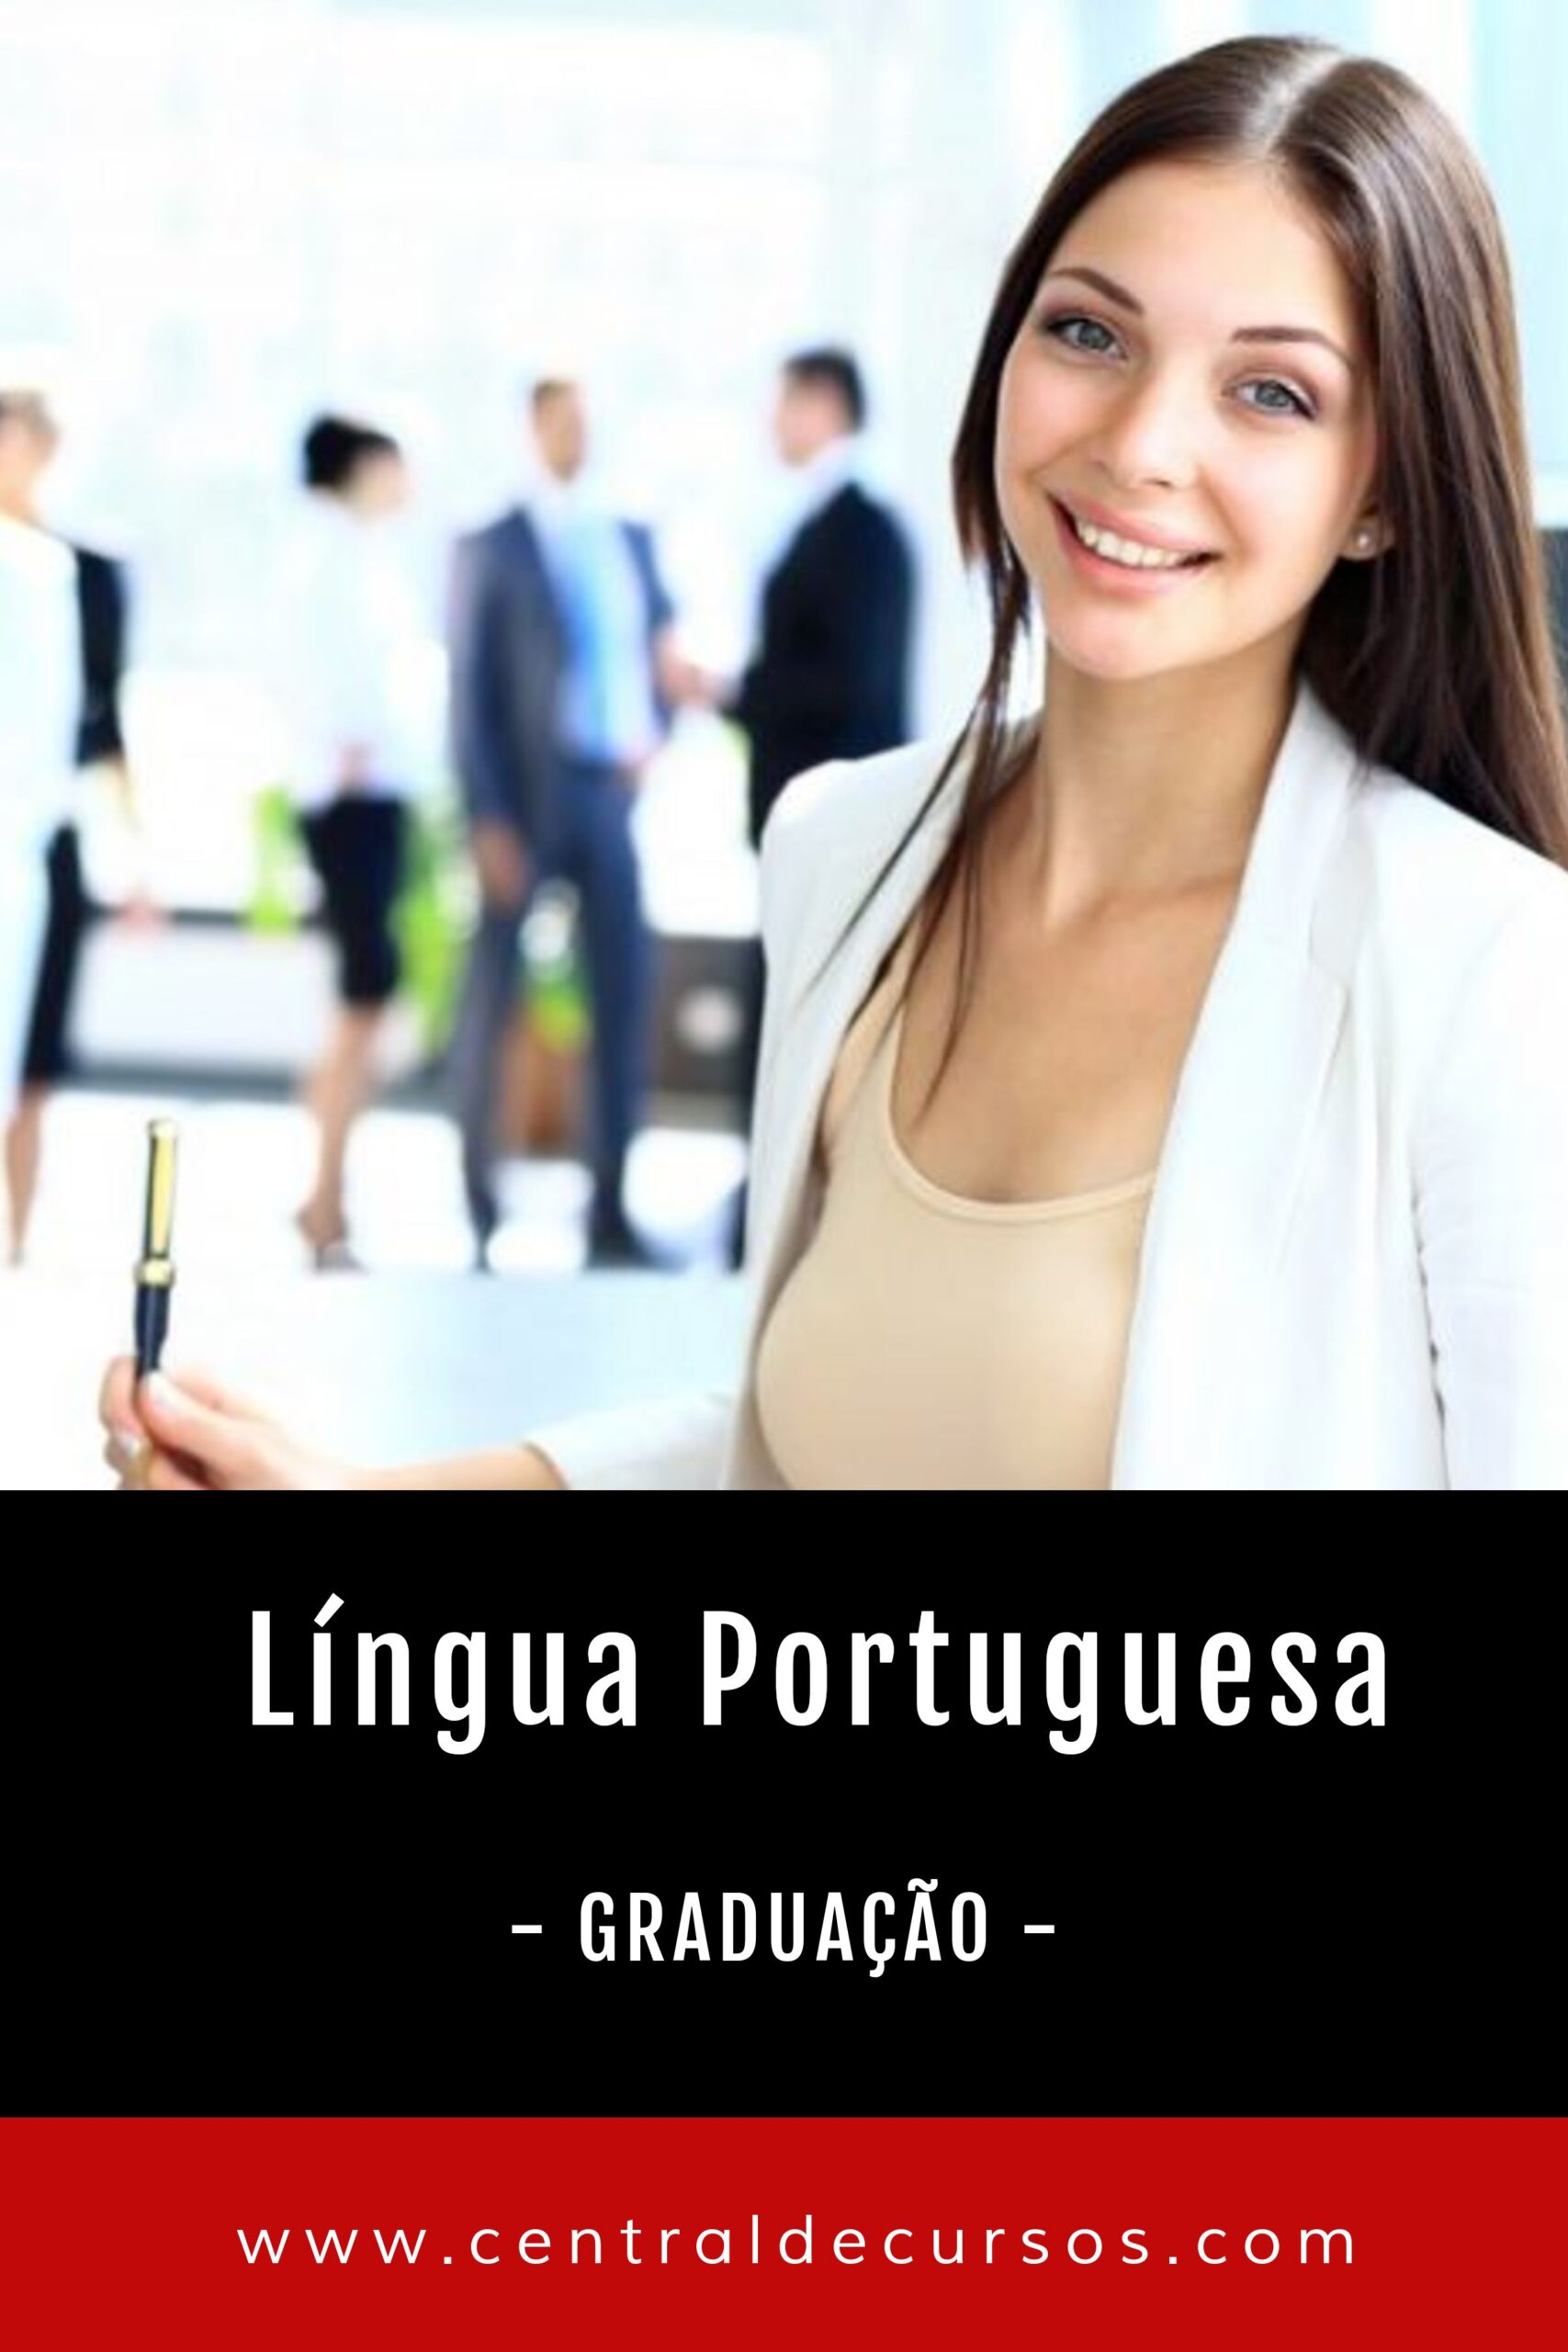 Graduação em língua portuguesa